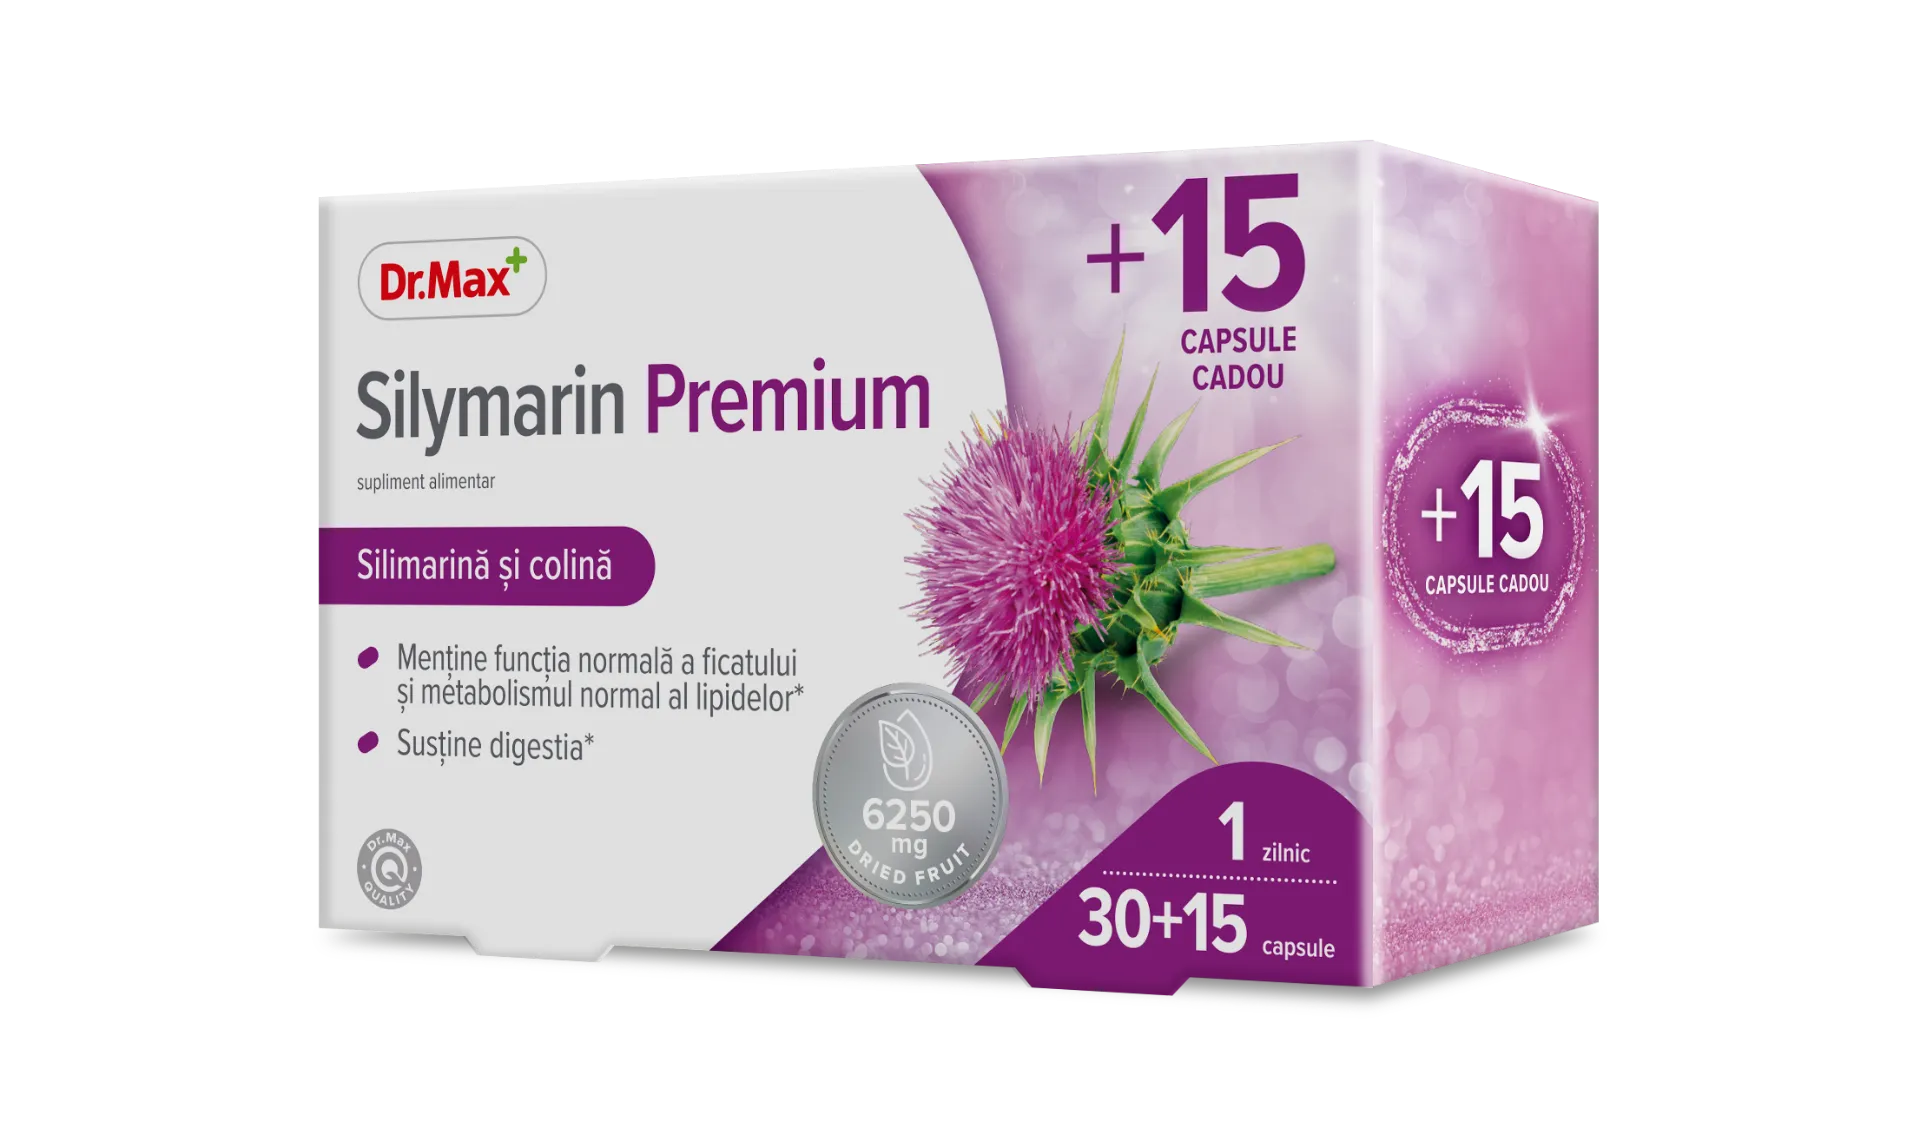 Dr.Max Silimarina Premium, 30+15 capsule